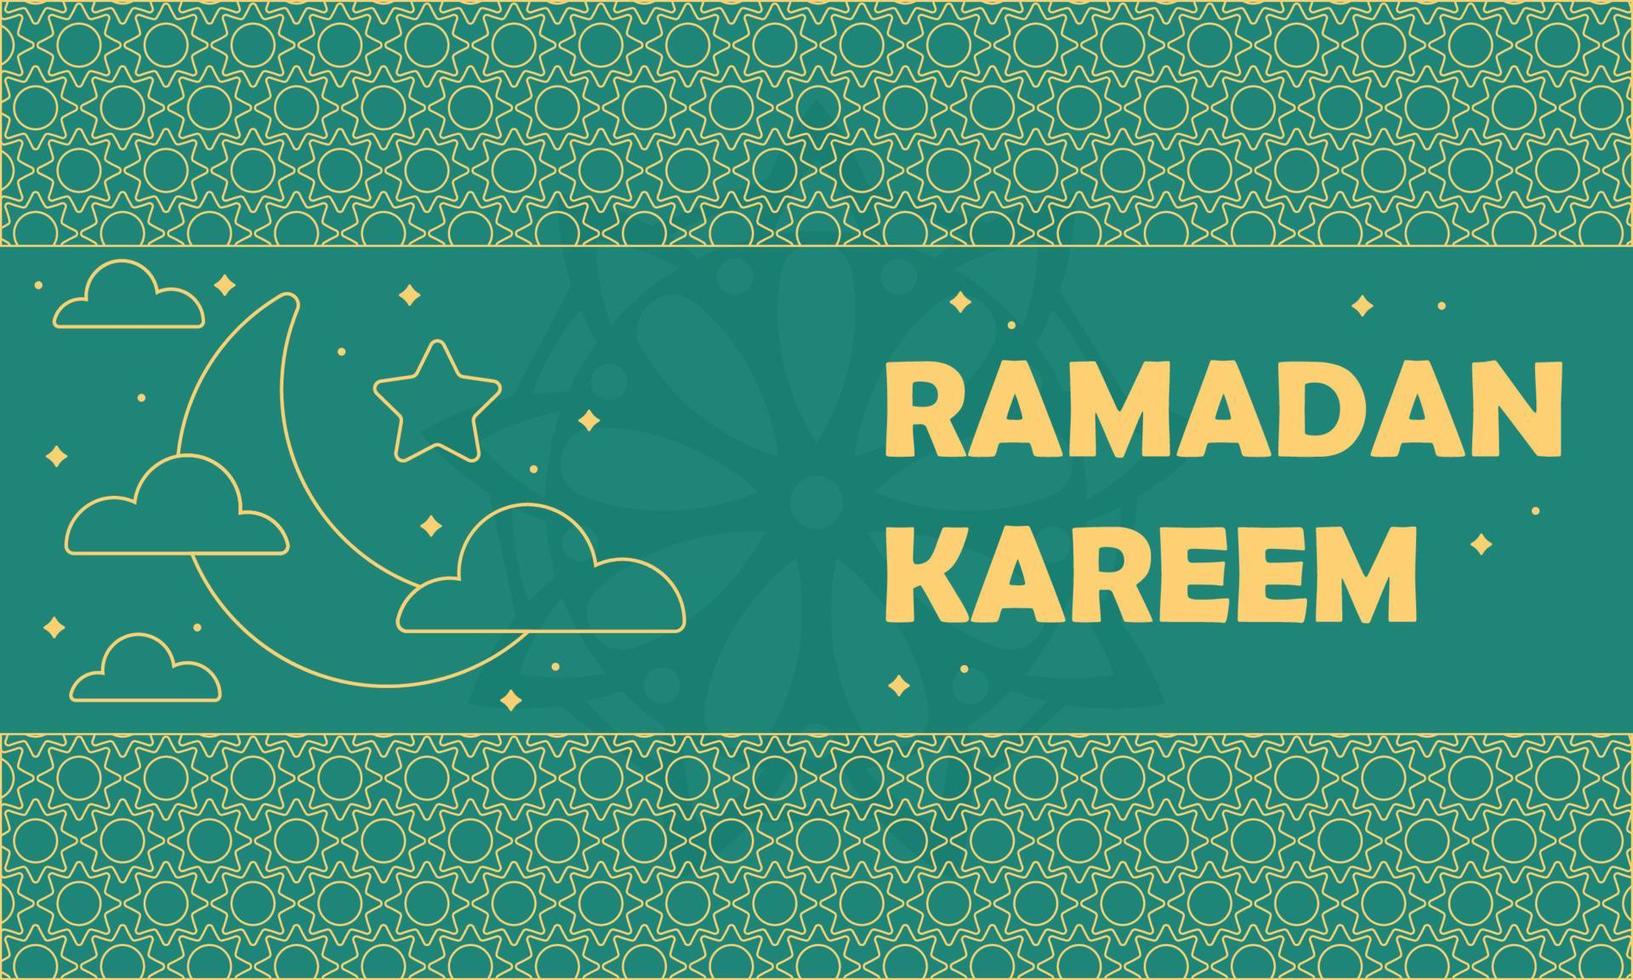 Hand gezeichnet heilig Ramadan kareem Hintergrund vektor